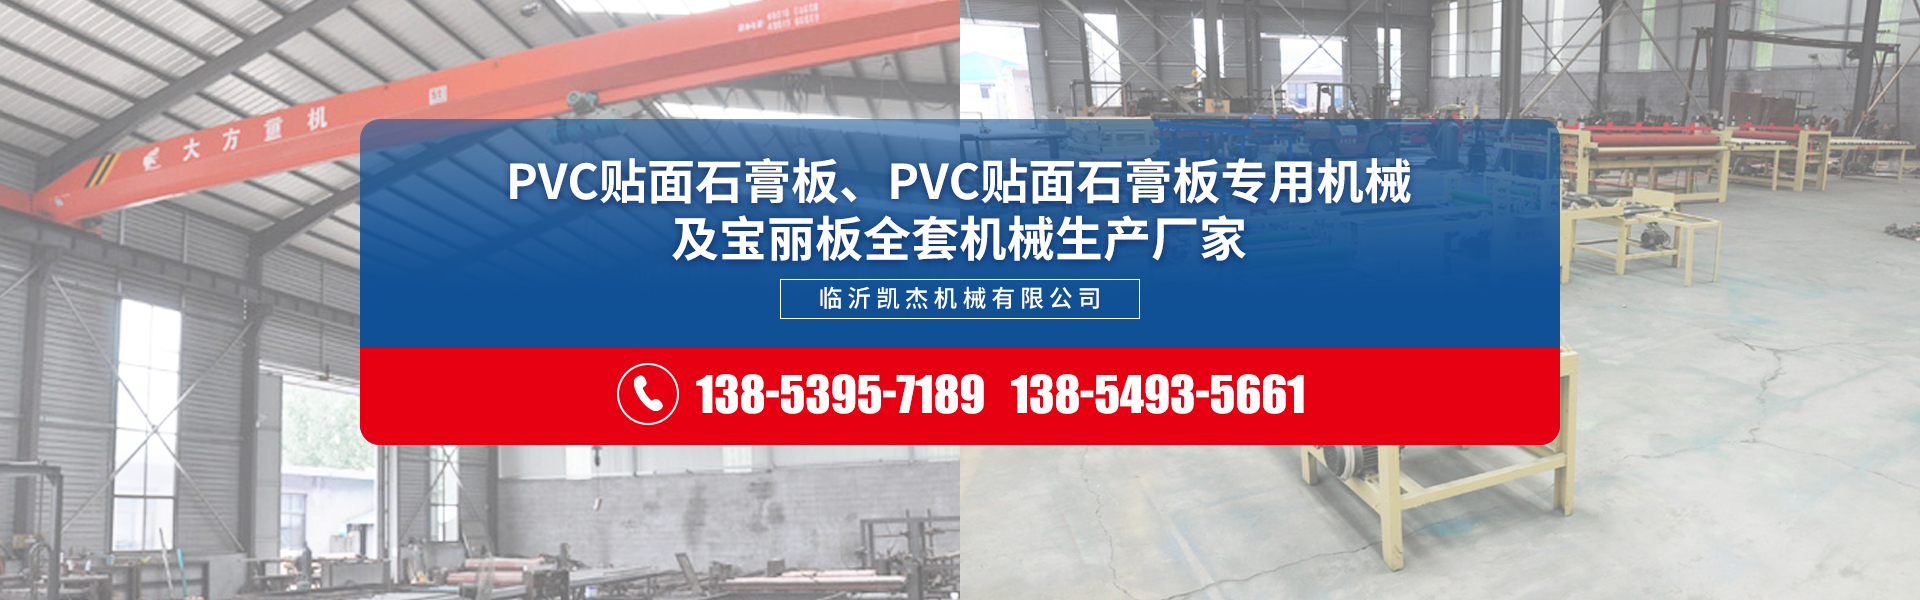 雙面貼面機生產廠家,pvc石膏板塑封機廠家,pvc石膏板包邊機,pvc石膏板自動包裝機